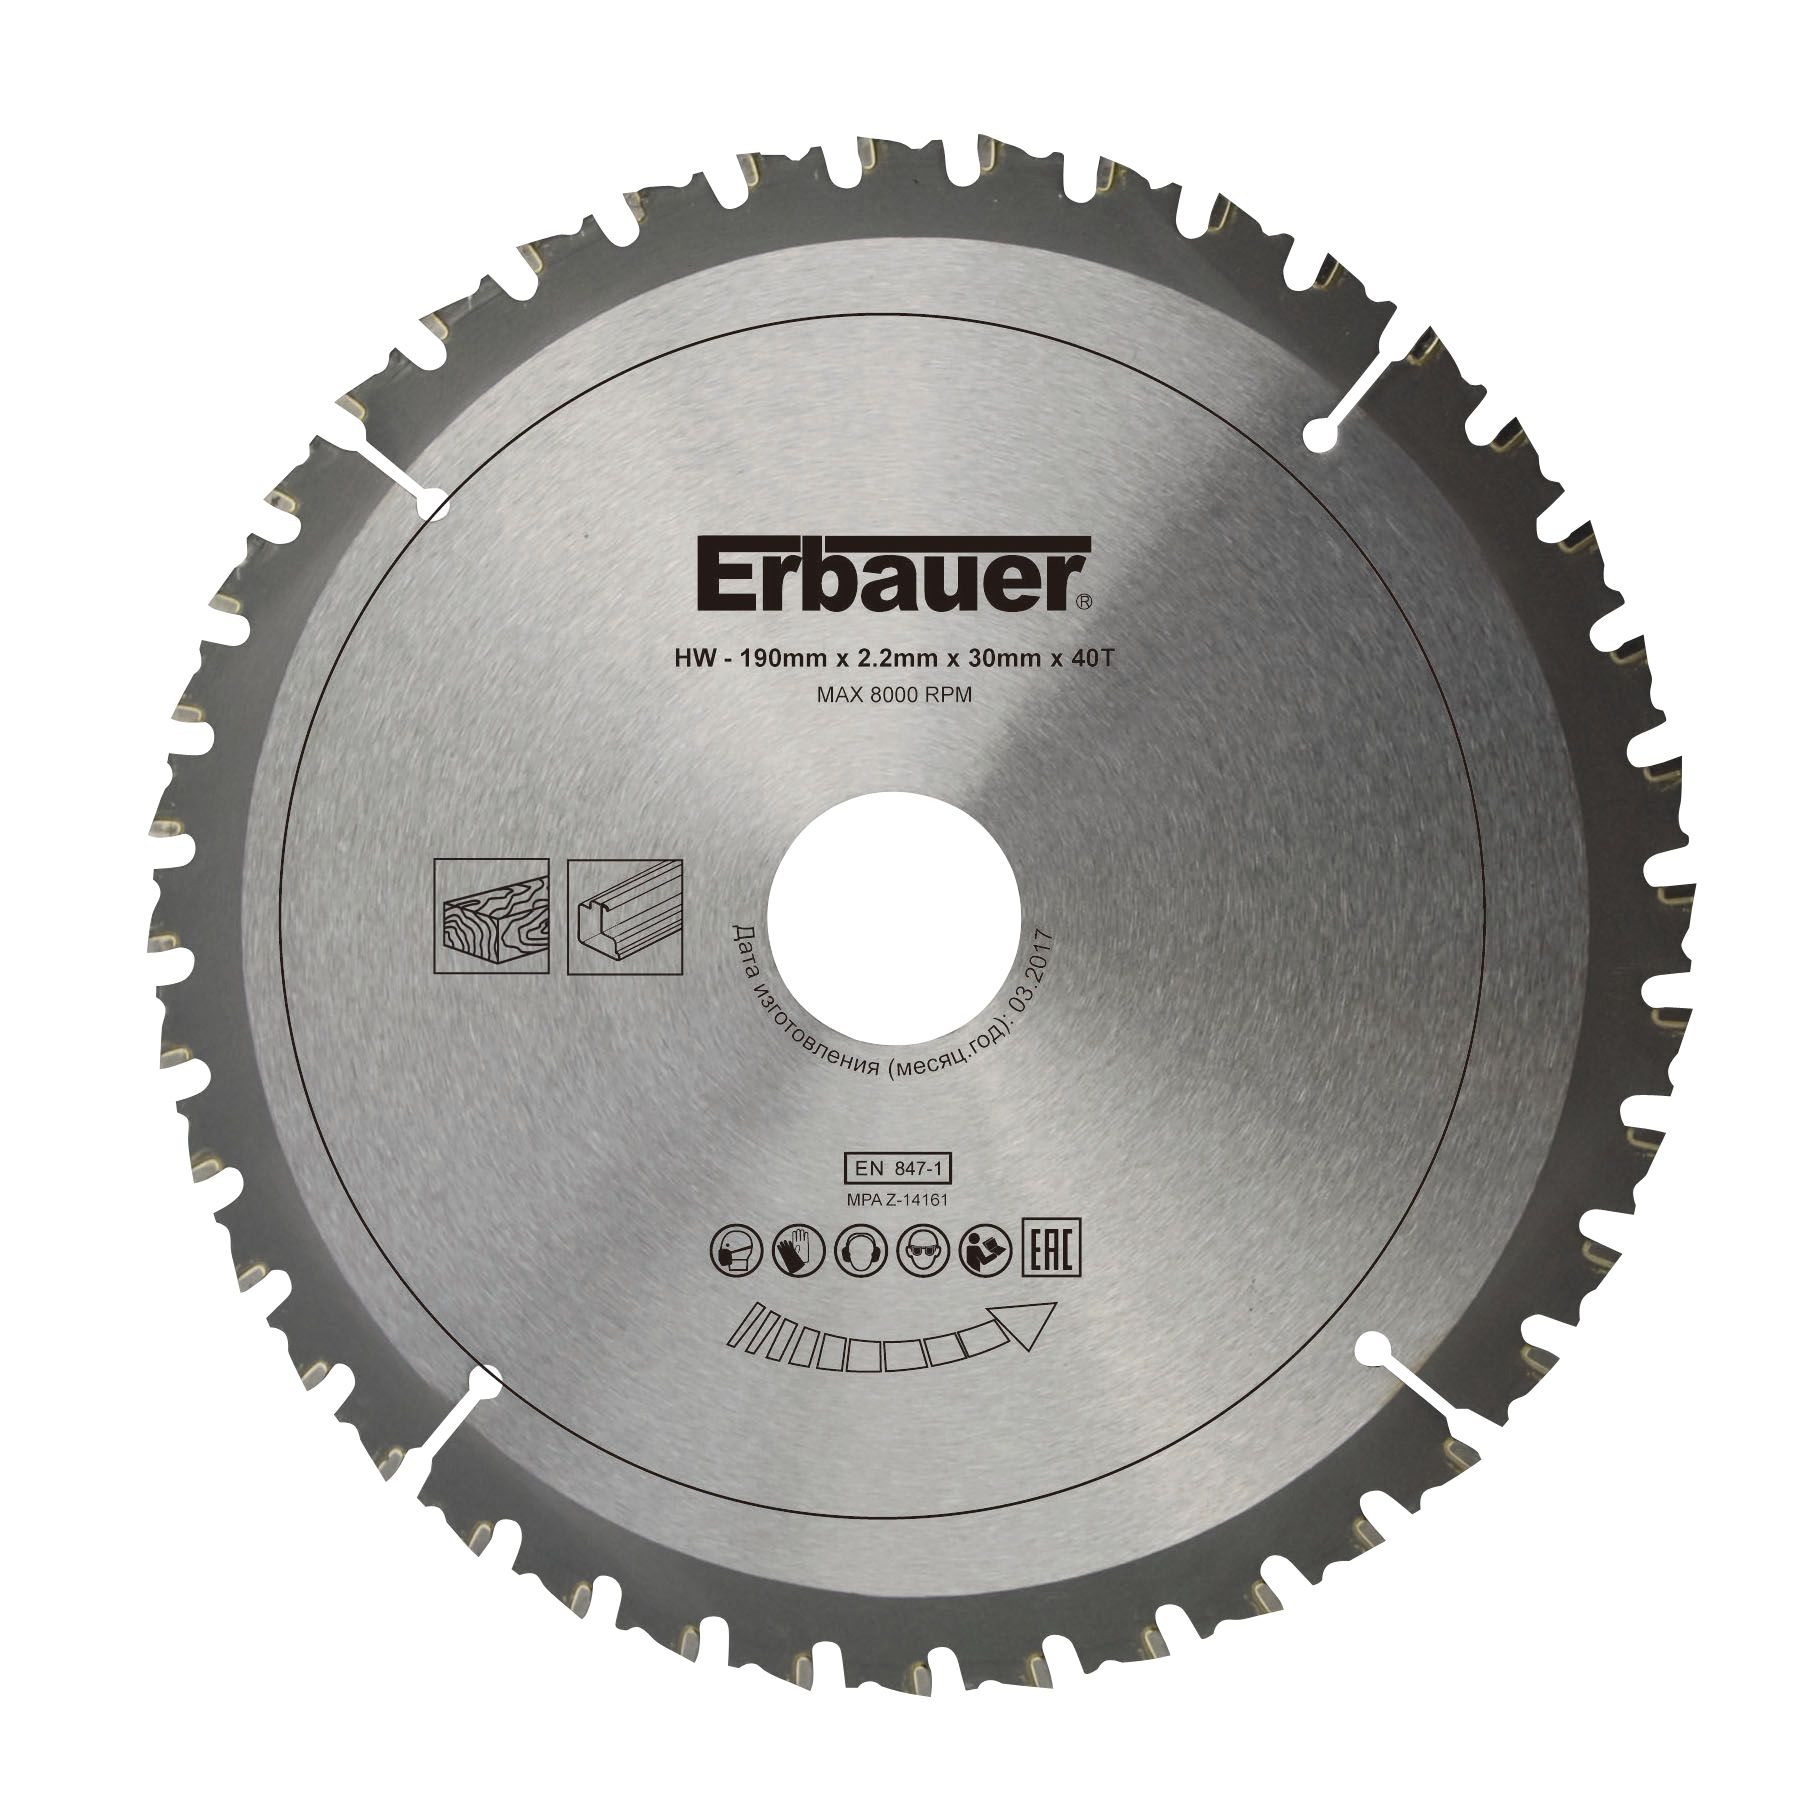 Erbauer Multi-material 40T Circular saw blade (Dia)190mm